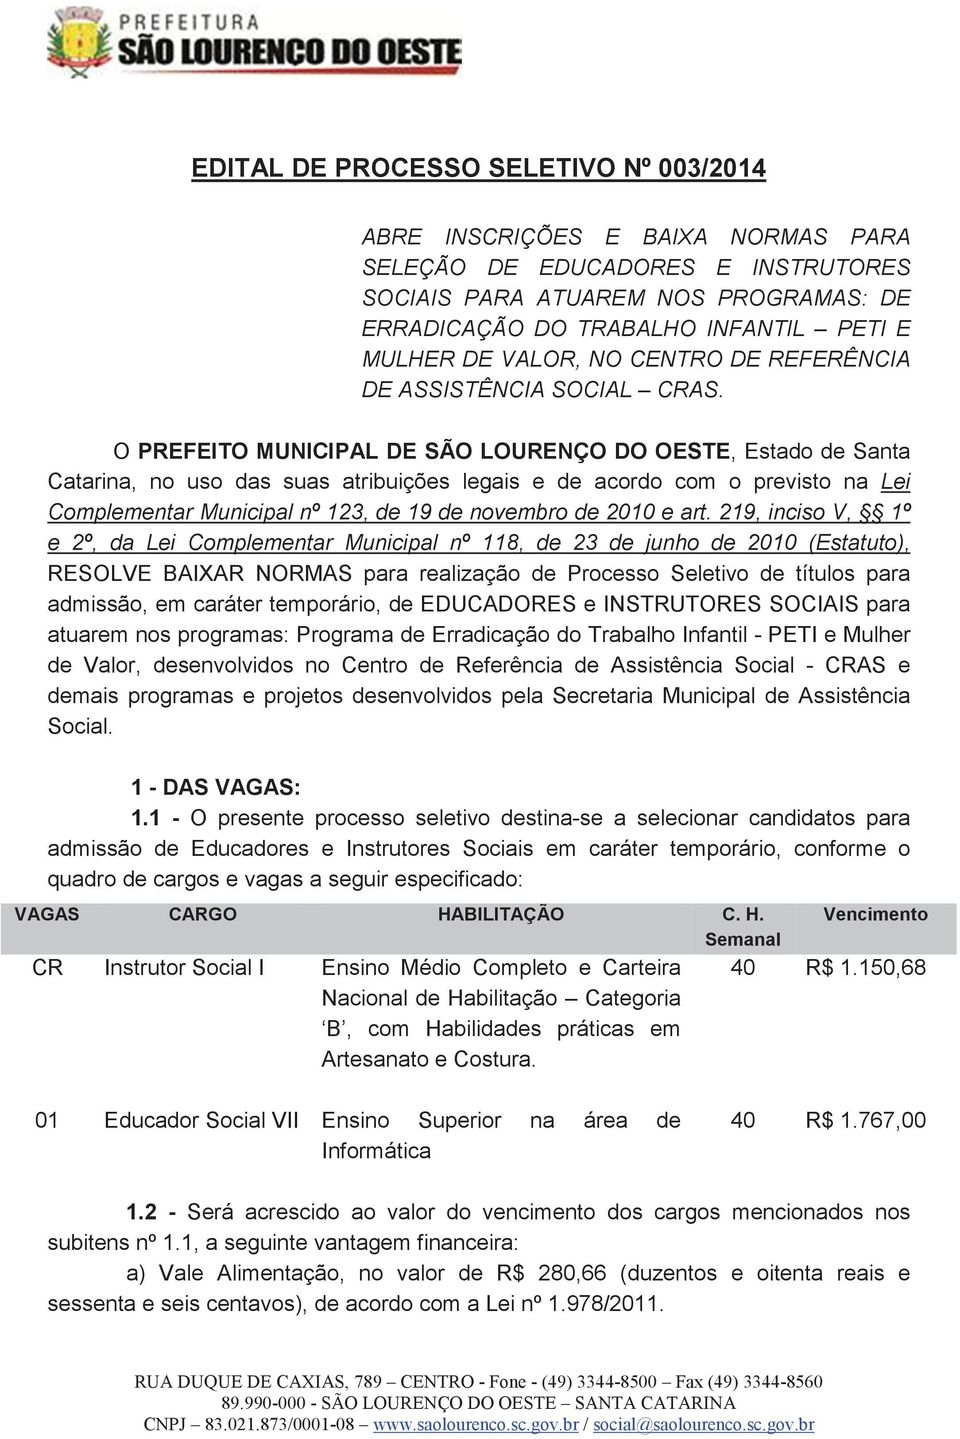 O PREFEITO MUNICIPAL DE SÃO LOURENÇO DO OESTE, Estado de Santa Catarina, no uso das suas atribuições legais e de acordo com o previsto na Lei Complementar Municipal nº 123, de 19 de novembro de 2010